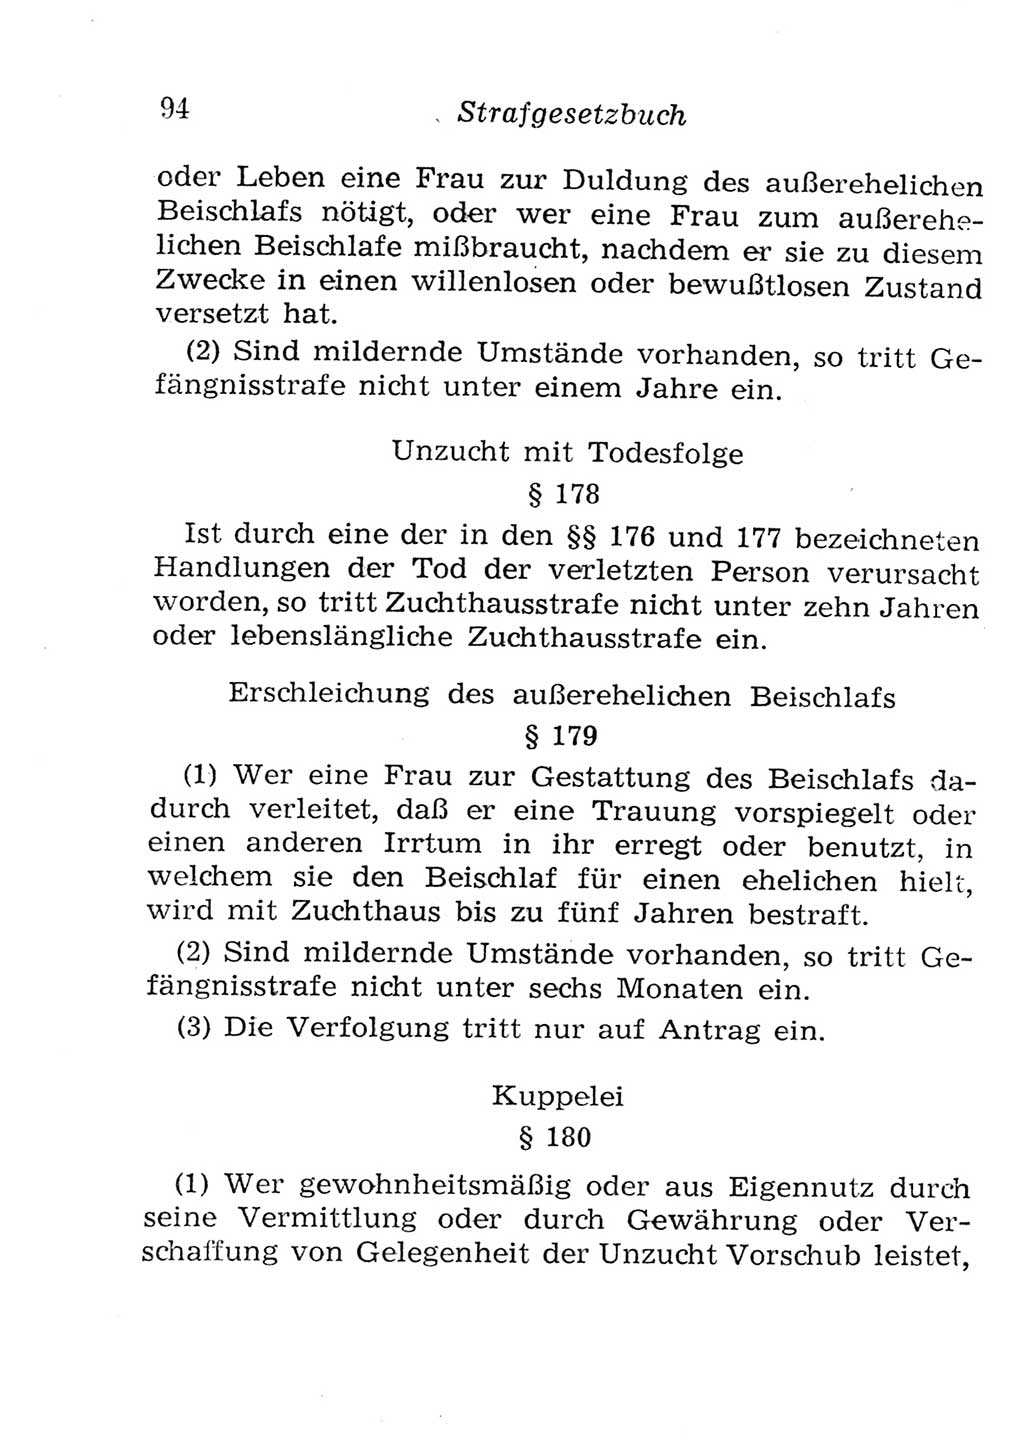 Strafgesetzbuch (StGB) und andere Strafgesetze [Deutsche Demokratische Republik (DDR)] 1957, Seite 94 (StGB Strafges. DDR 1957, S. 94)